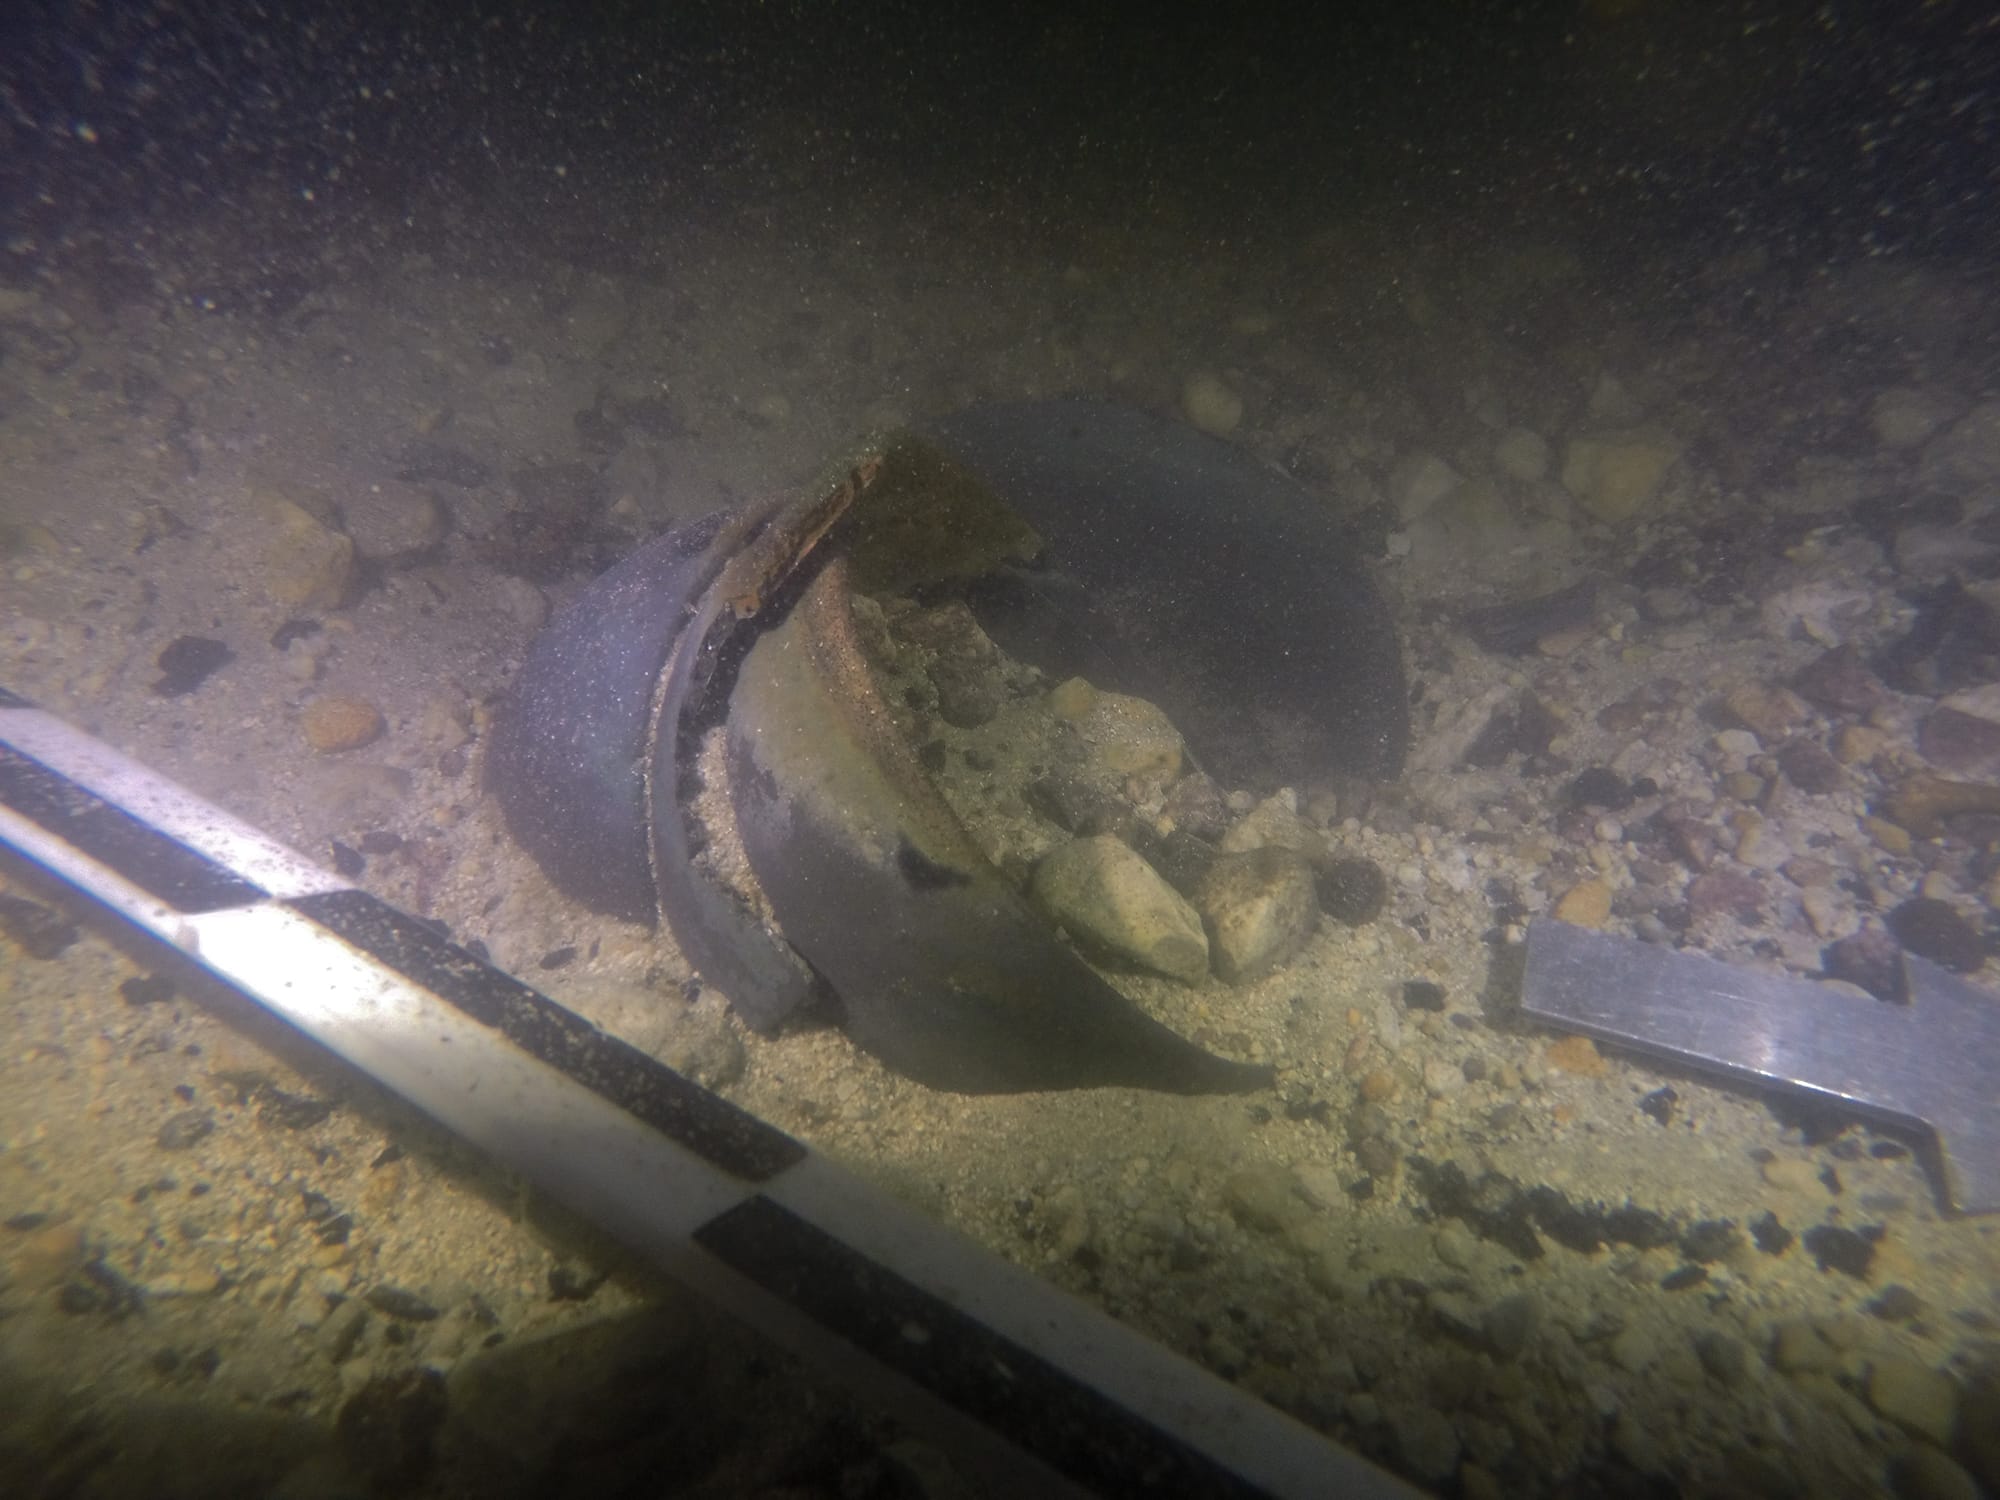 depozyt ofiarny odnaleziony pod wodą